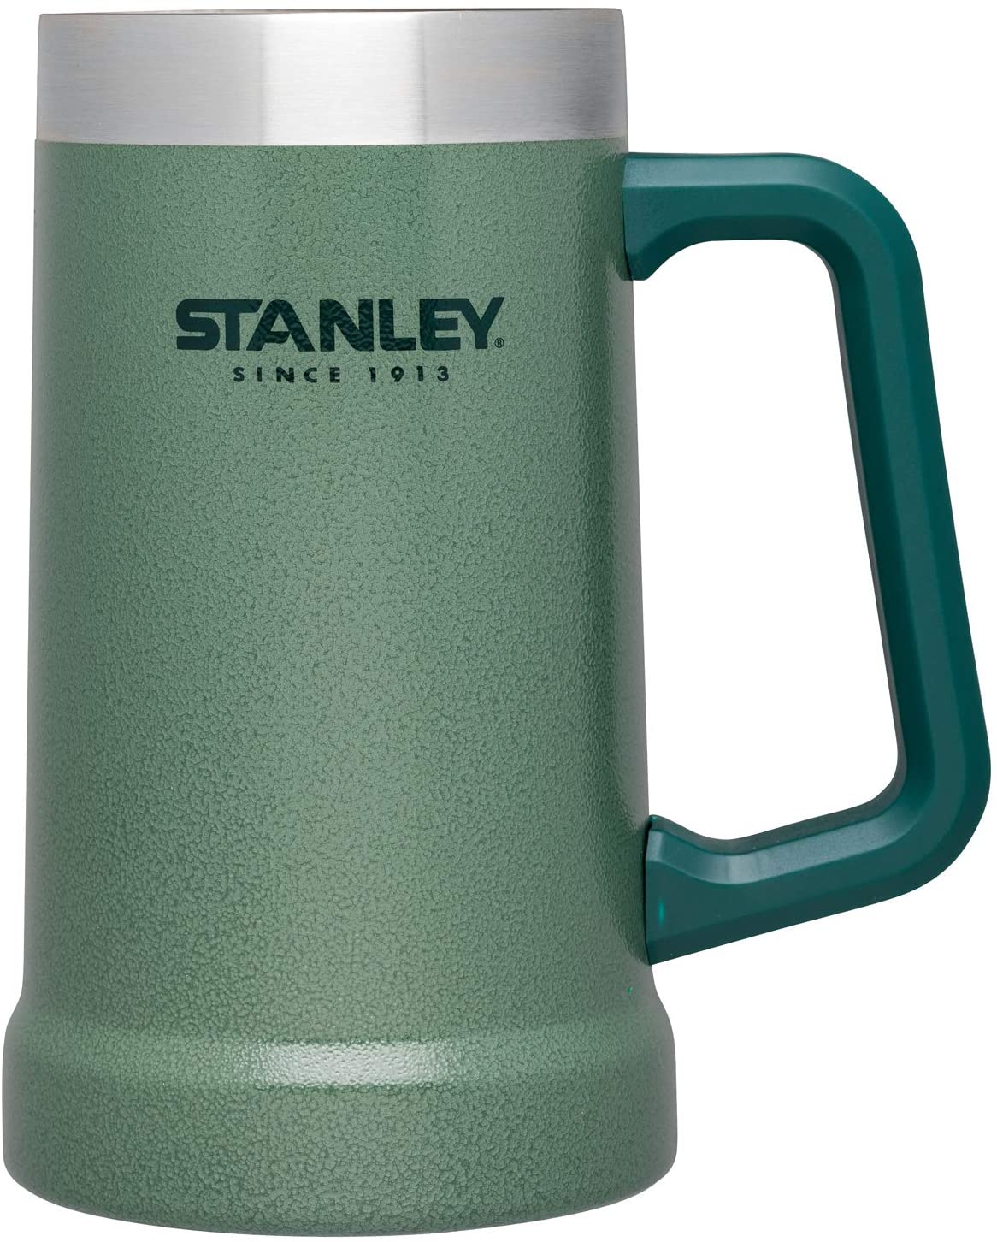 STANLEY(スタンレー) 真空ジョッキ 0.7L 02874-021の商品画像1 